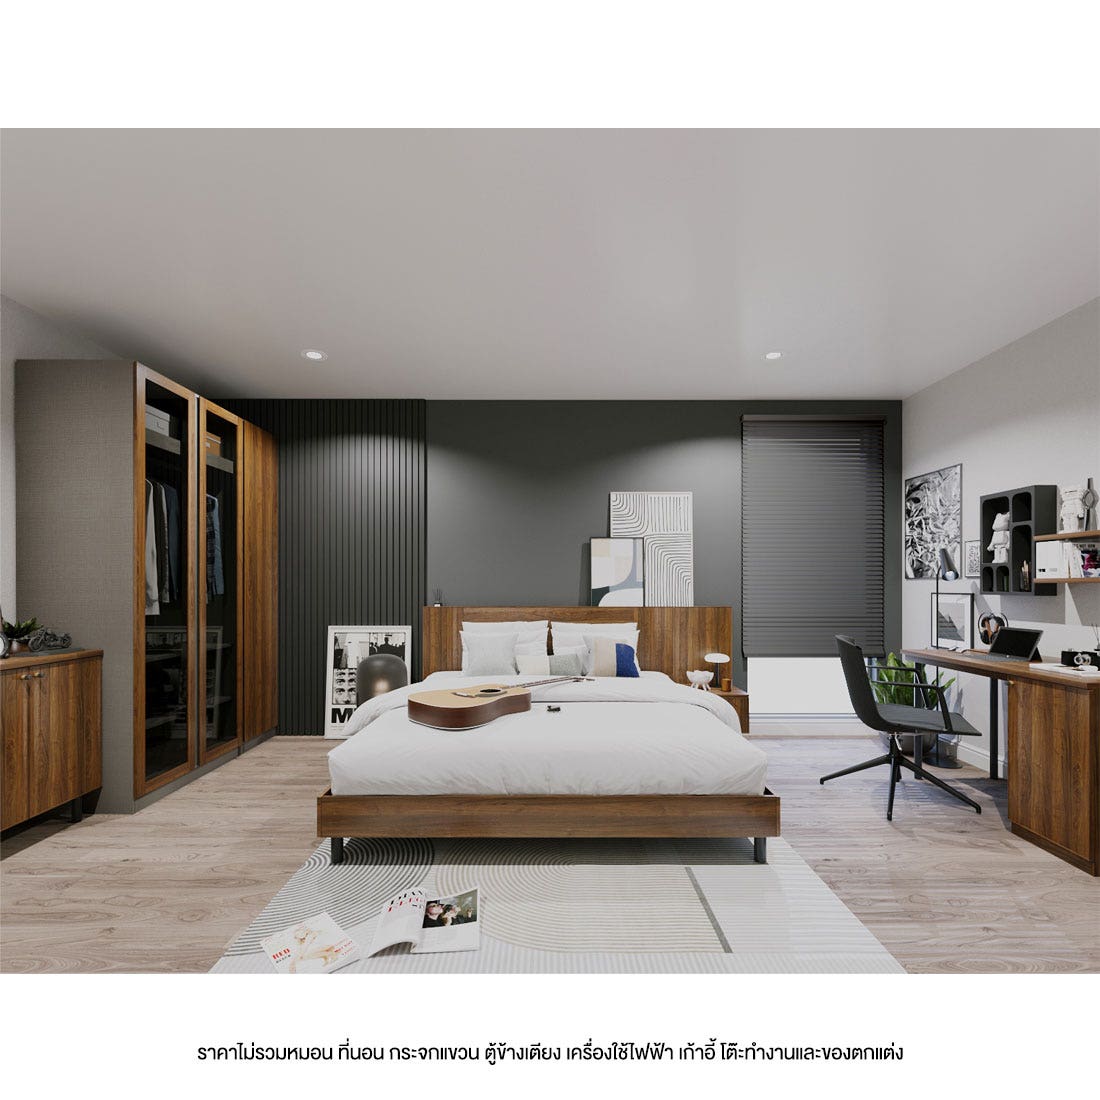 ชุดห้องนอน 6 ฟุต รุ่น Kumamoto &  ตู้ Blox 150 ซม. สีไม้เข้ม01